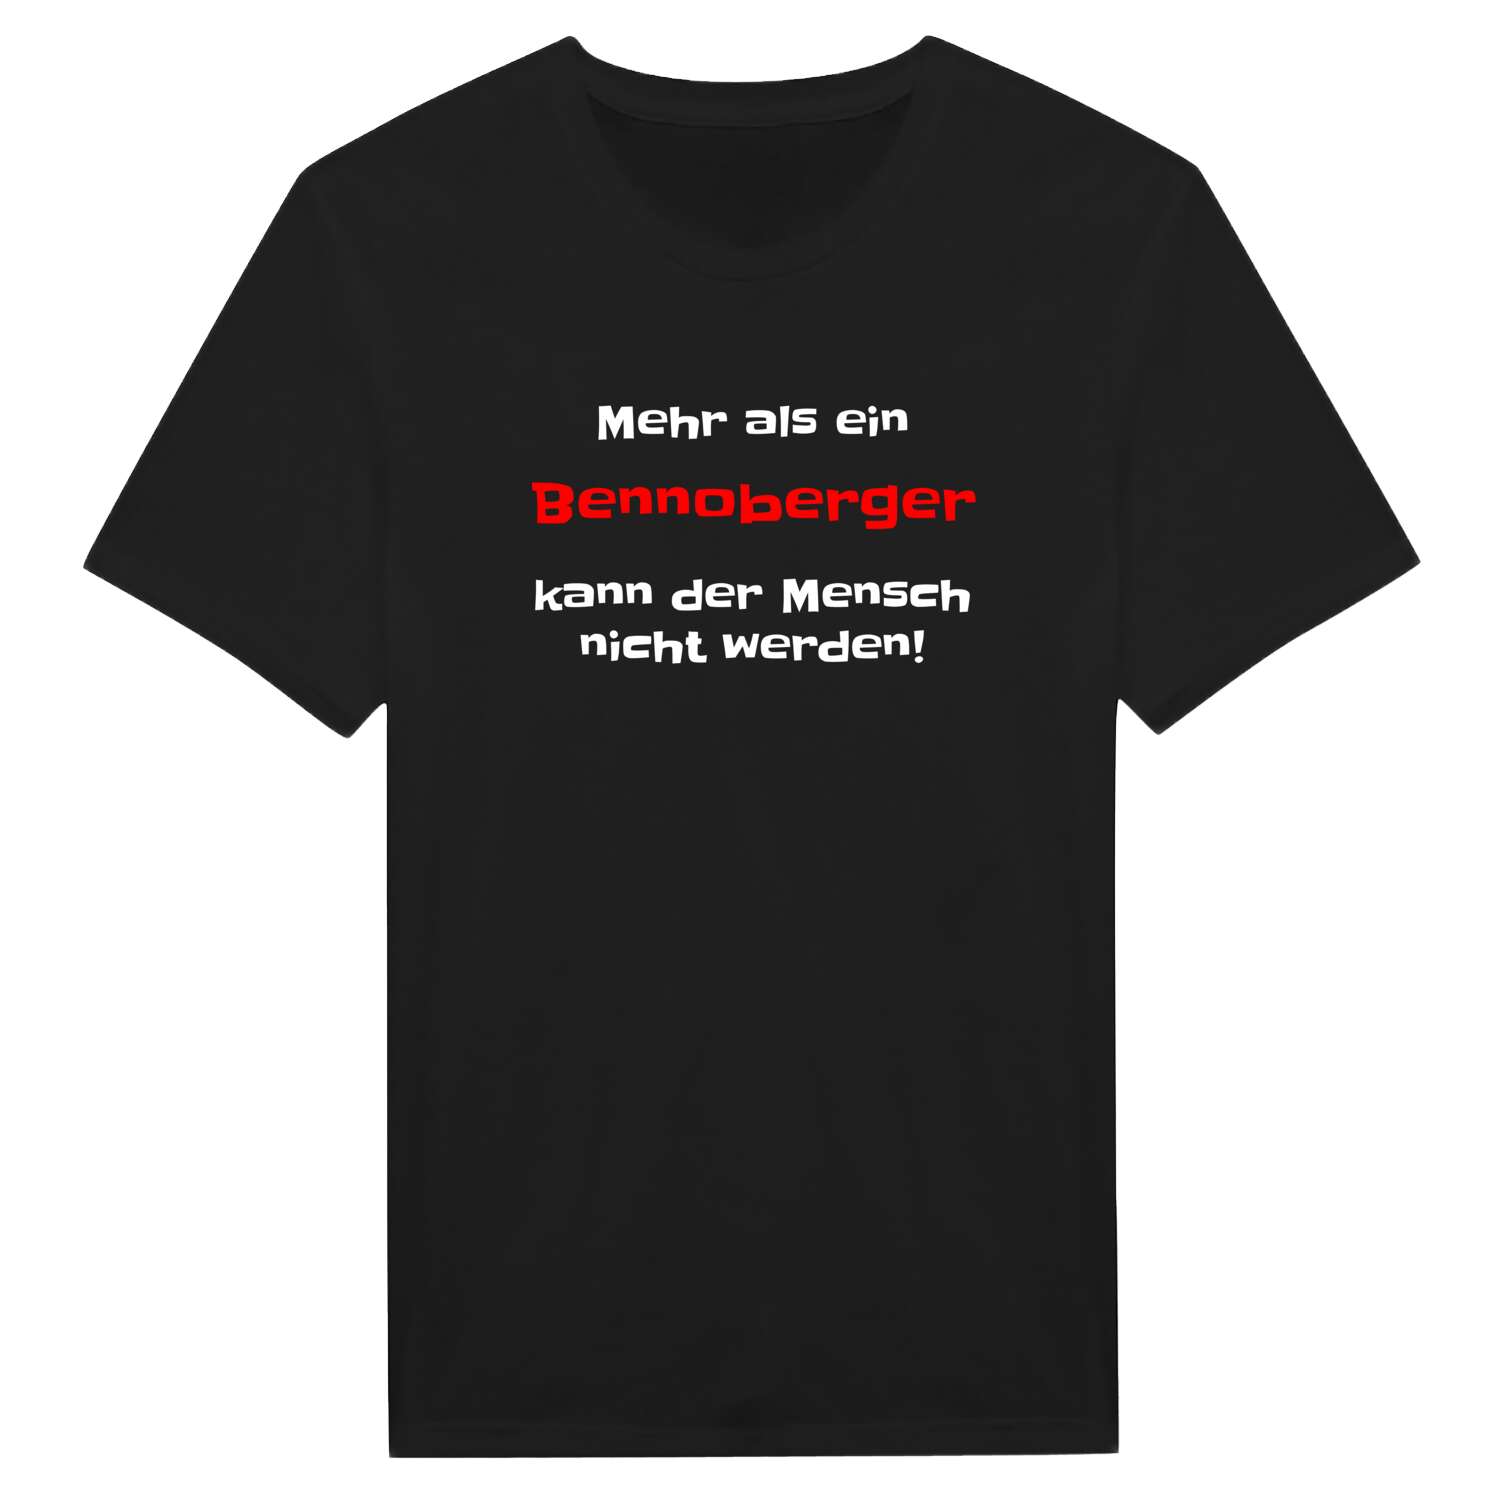 Bennoberg T-Shirt »Mehr als ein«